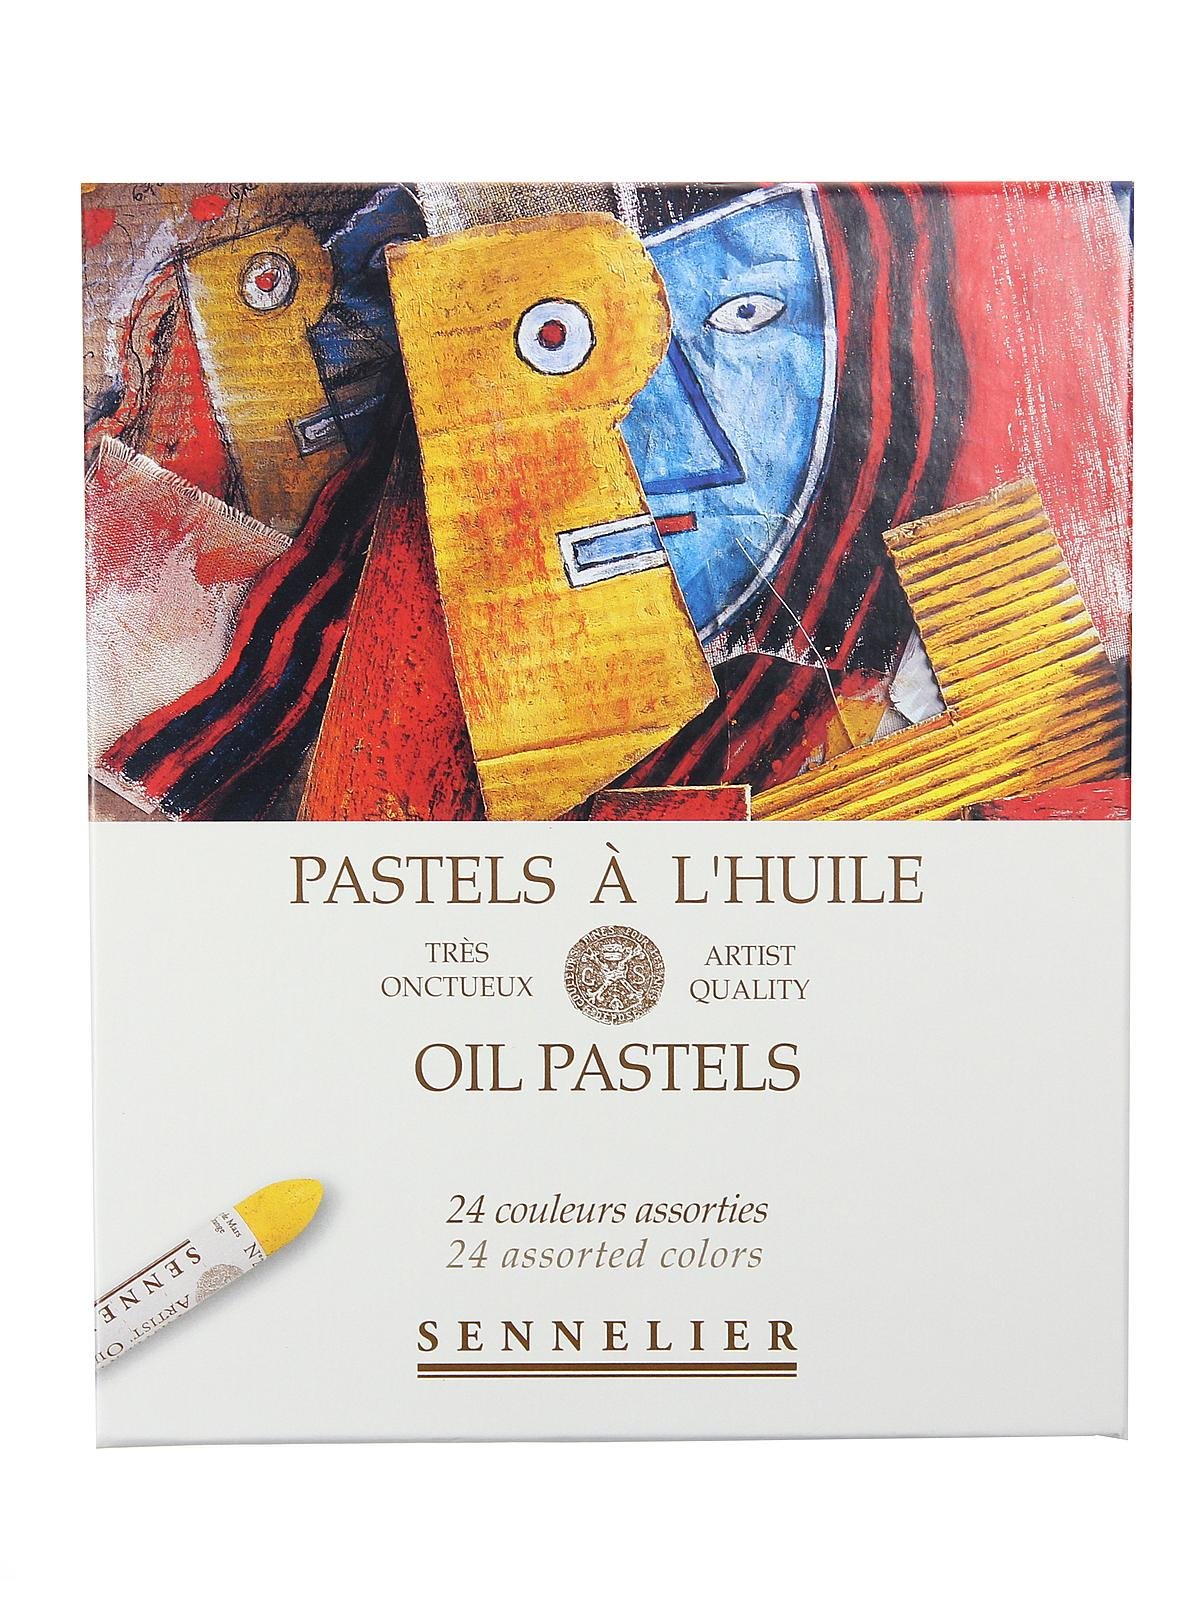 Sennelier Oil Pastel Set - Iridescent Colors, Set of 12